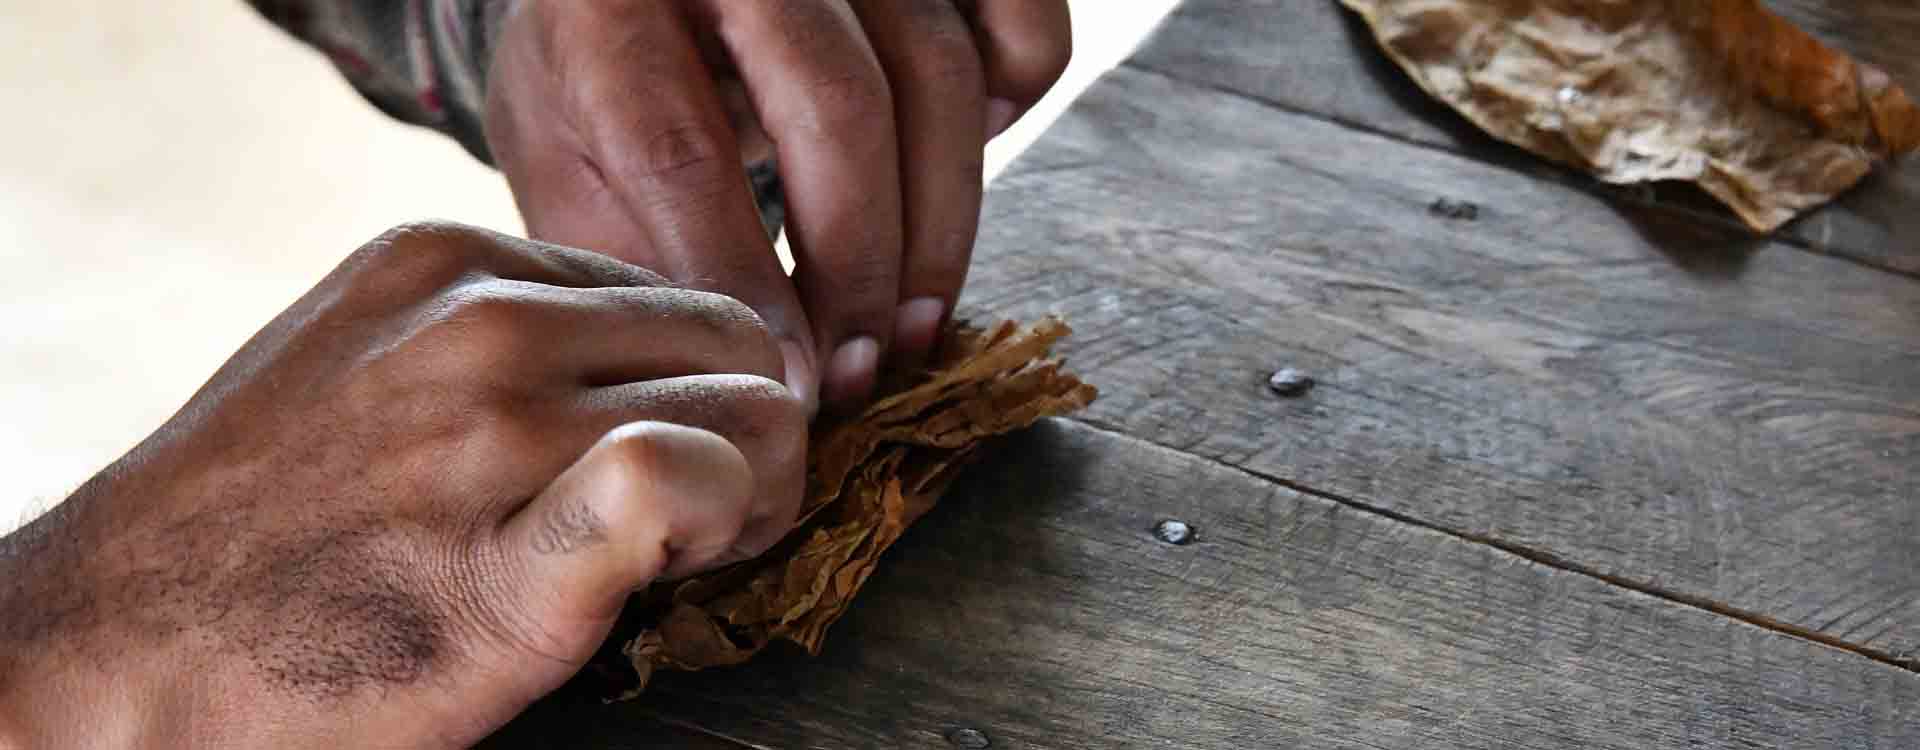 Balenie tabakových listov do cigary - detail